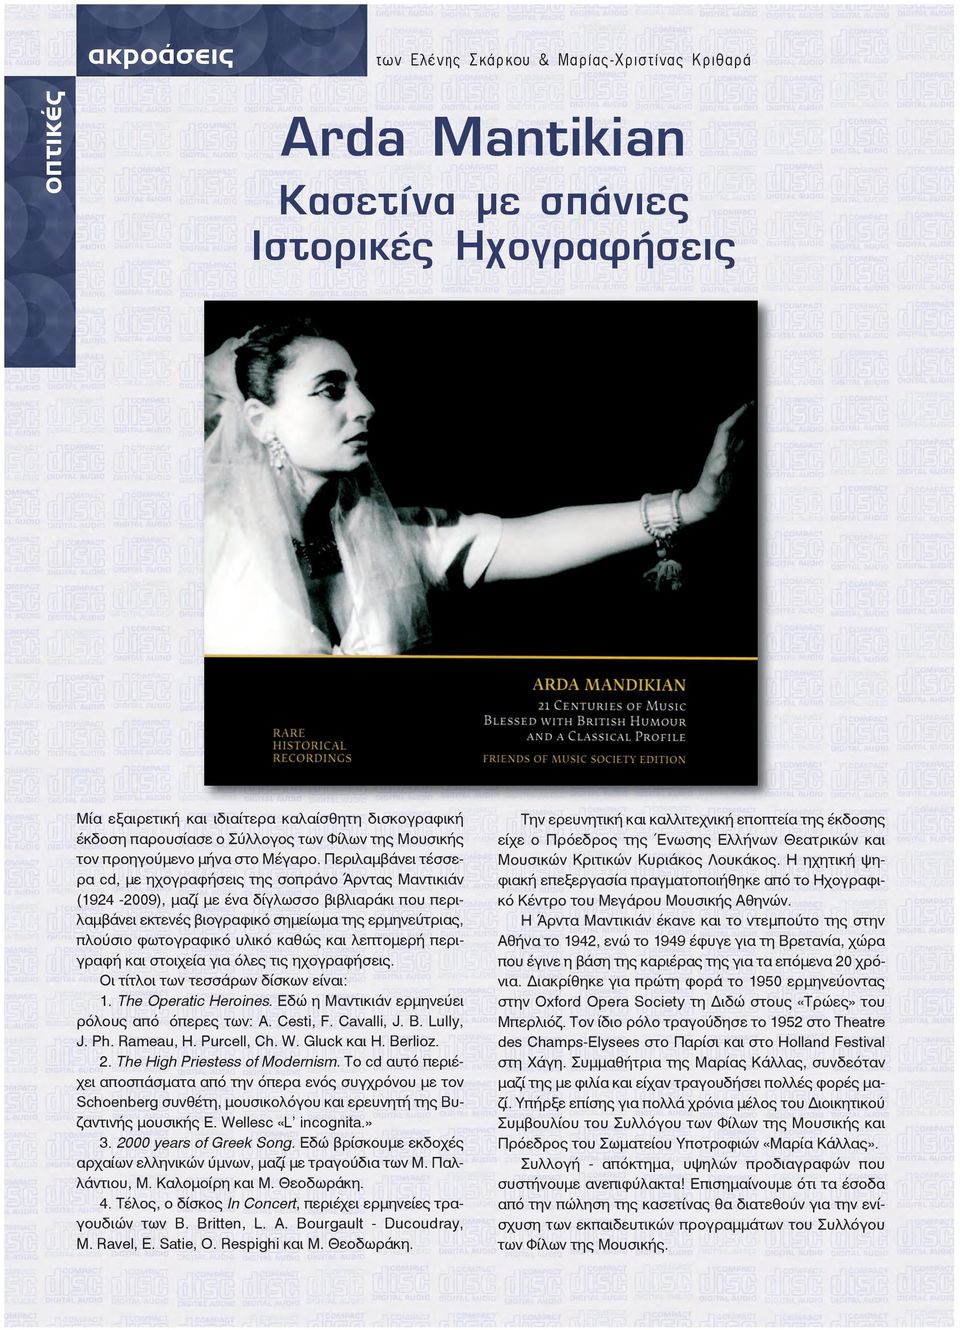 Περιλαμβάνει τέσσερα cd, με ηχογραφήσεις της σοπράνο Άρντας Μαντικιάν (1924-2009), μαζί με ένα δίγλωσσο βιβλιαράκι που περιλαμβάνει εκτενές βιογραφικό σημείωμα της ερμηνεύτριας, πλούσιο φωτογραφικό